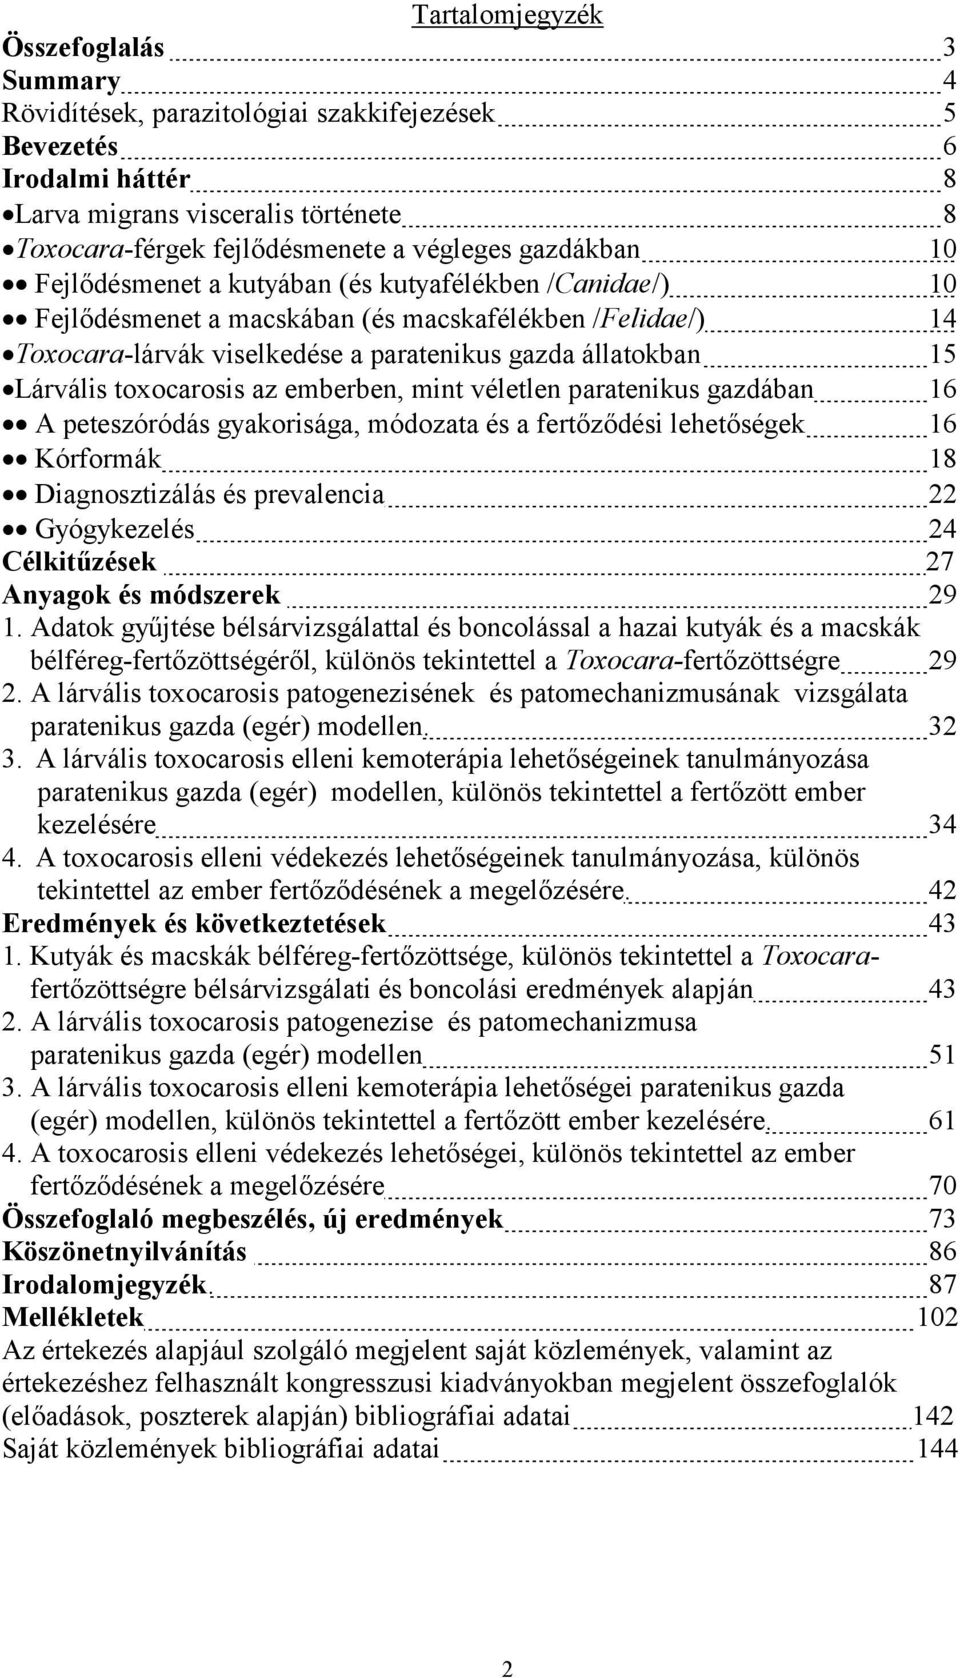 toxocarosis az emberben, mint véletlen paratenikus gazdában 16 A peteszóródás gyakorisága, módozata és a fertőződési lehetőségek 16 Kórformák 18 Diagnosztizálás és prevalencia 22 Gyógykezelés 24